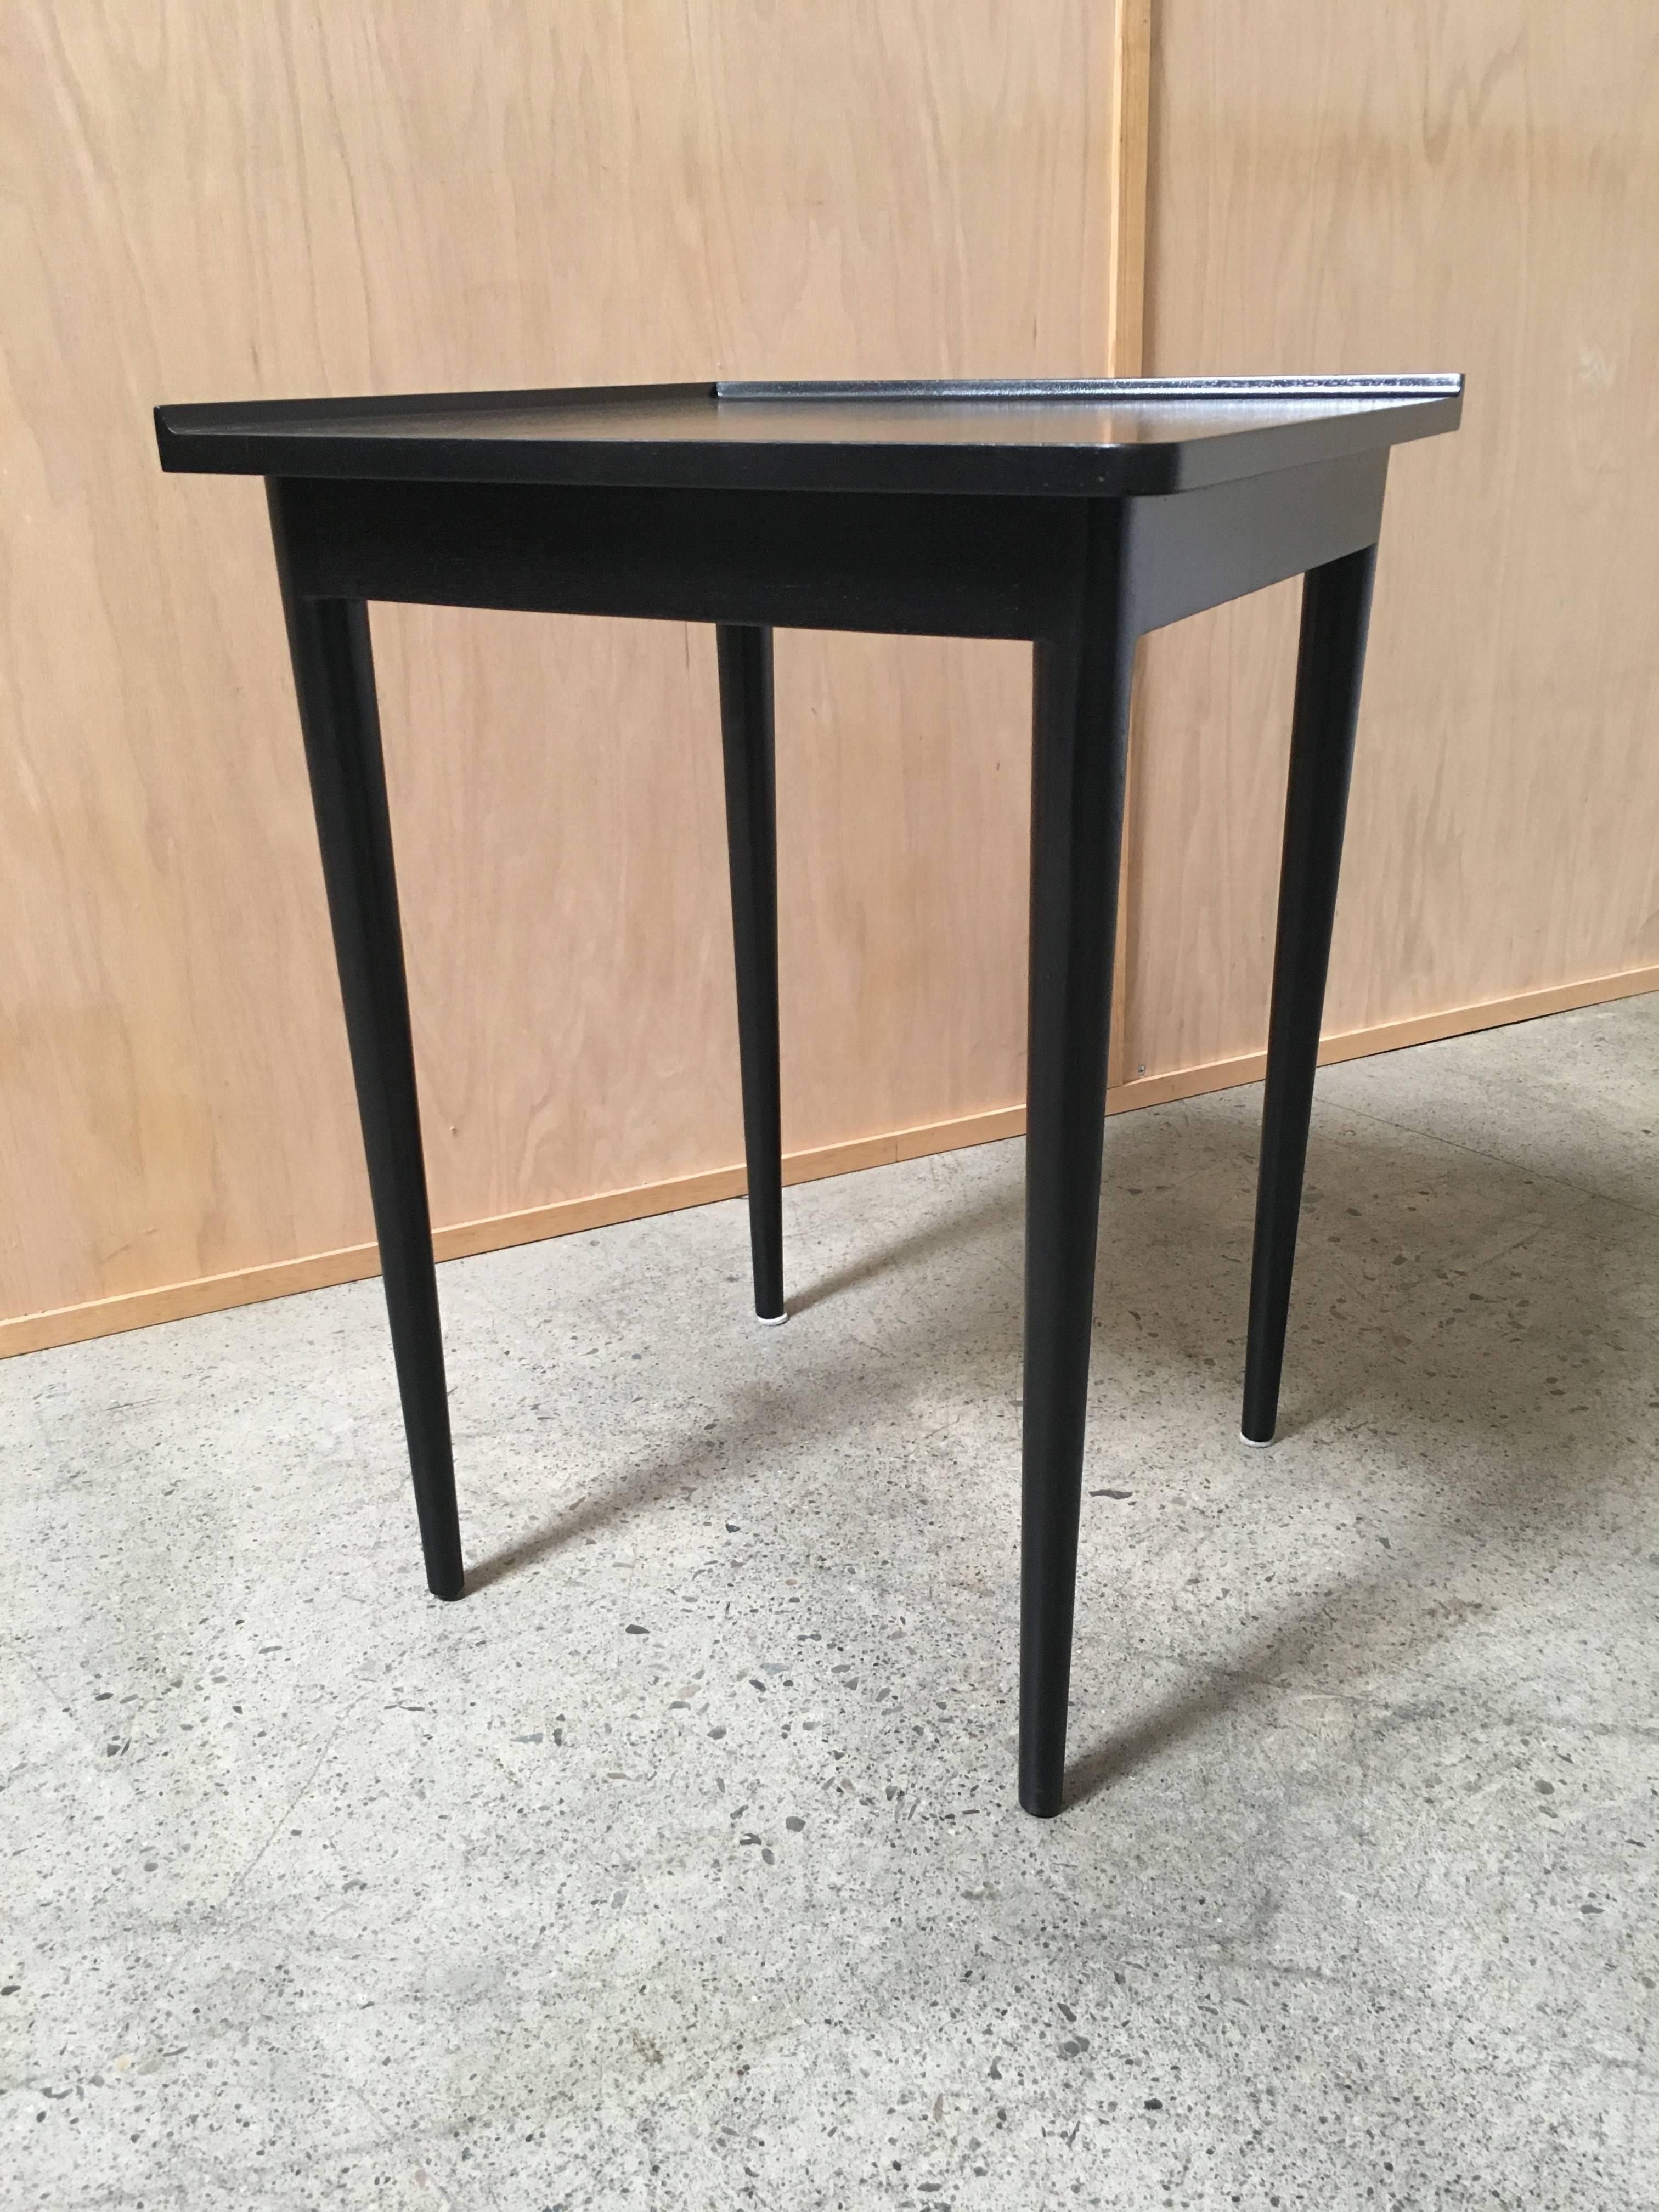 Ebonized corner table by Dunbar.